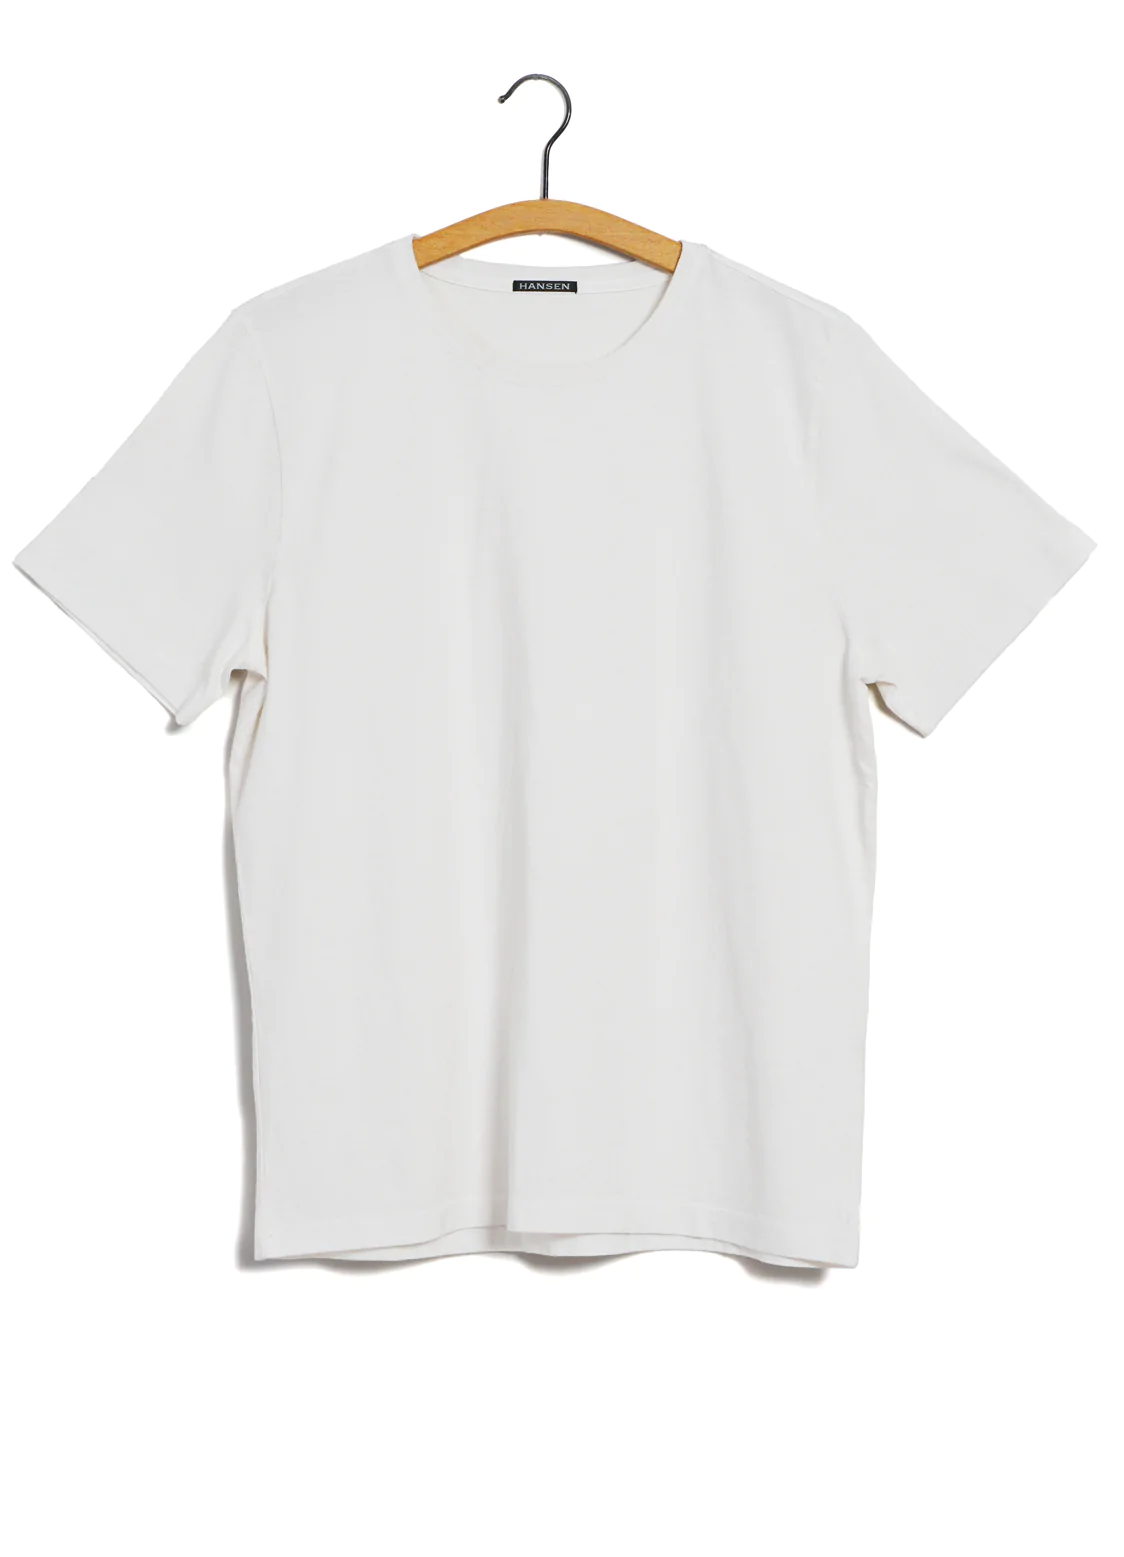 Julian, Crew Neck t-shirt, White-T-shirts-Hansen Garments-Motorious Copenhagen